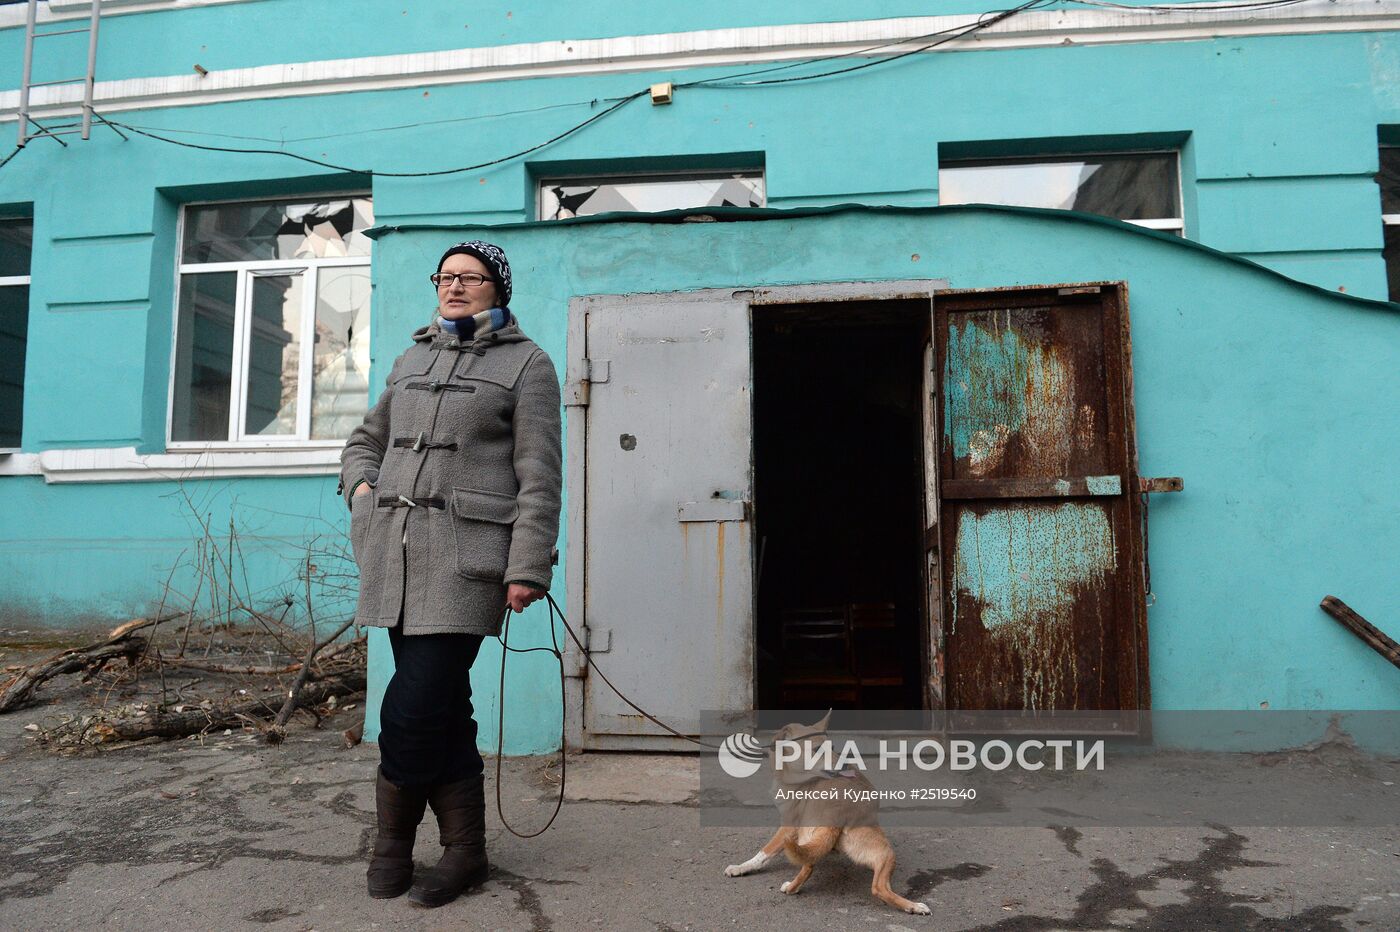 Донецк накануне выборов главы ДНР и депутатов Народного Совета ДНР